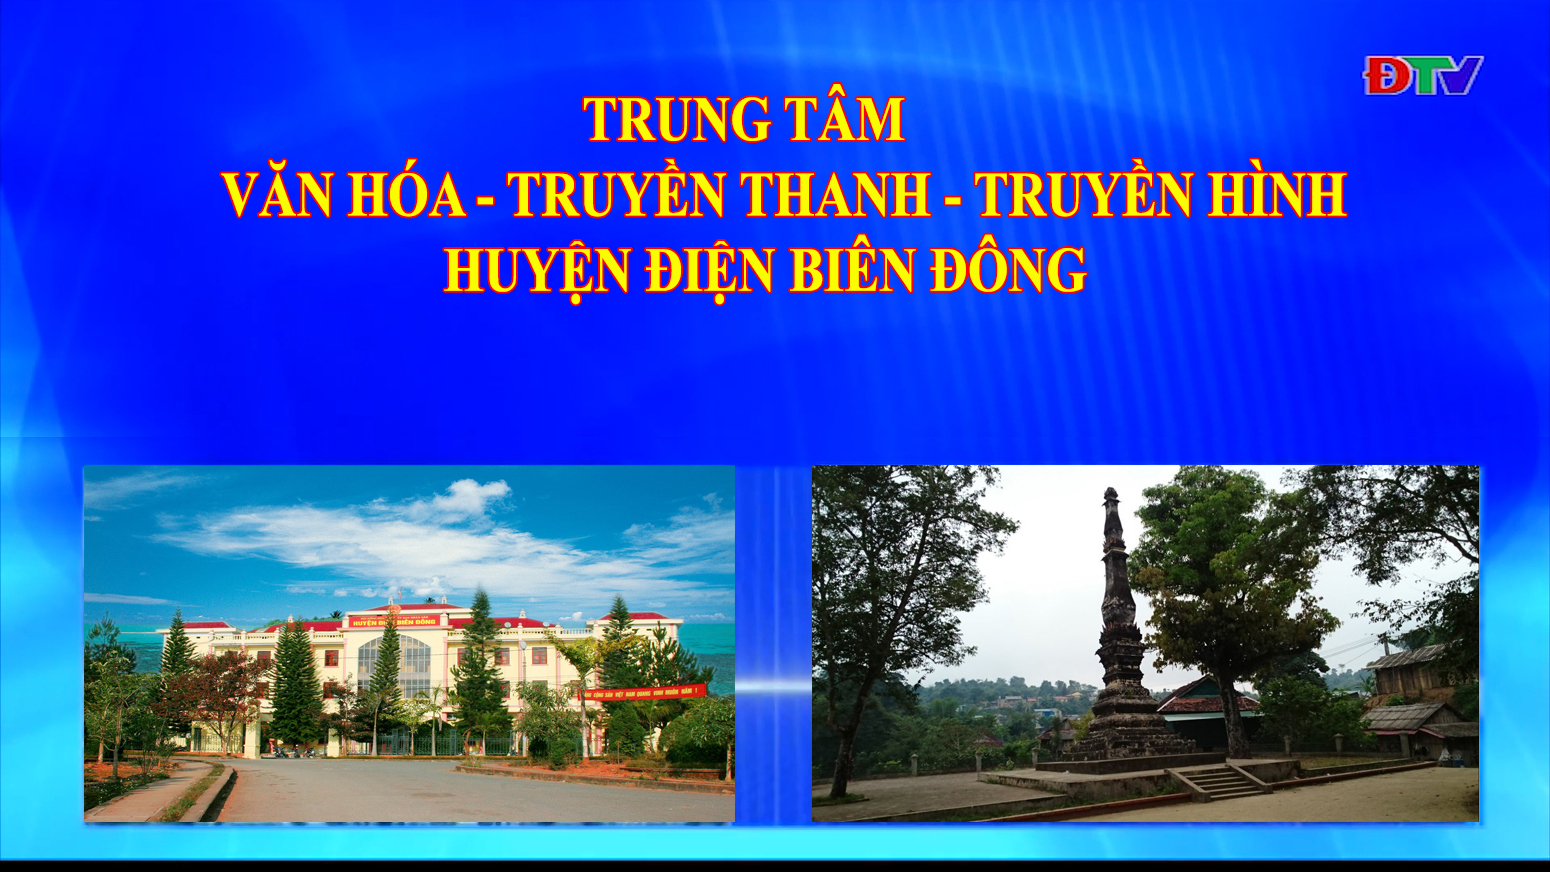 Trung tâm VH-TTTH huyện Điện Biên Đông (Ngày 11-12-2021)